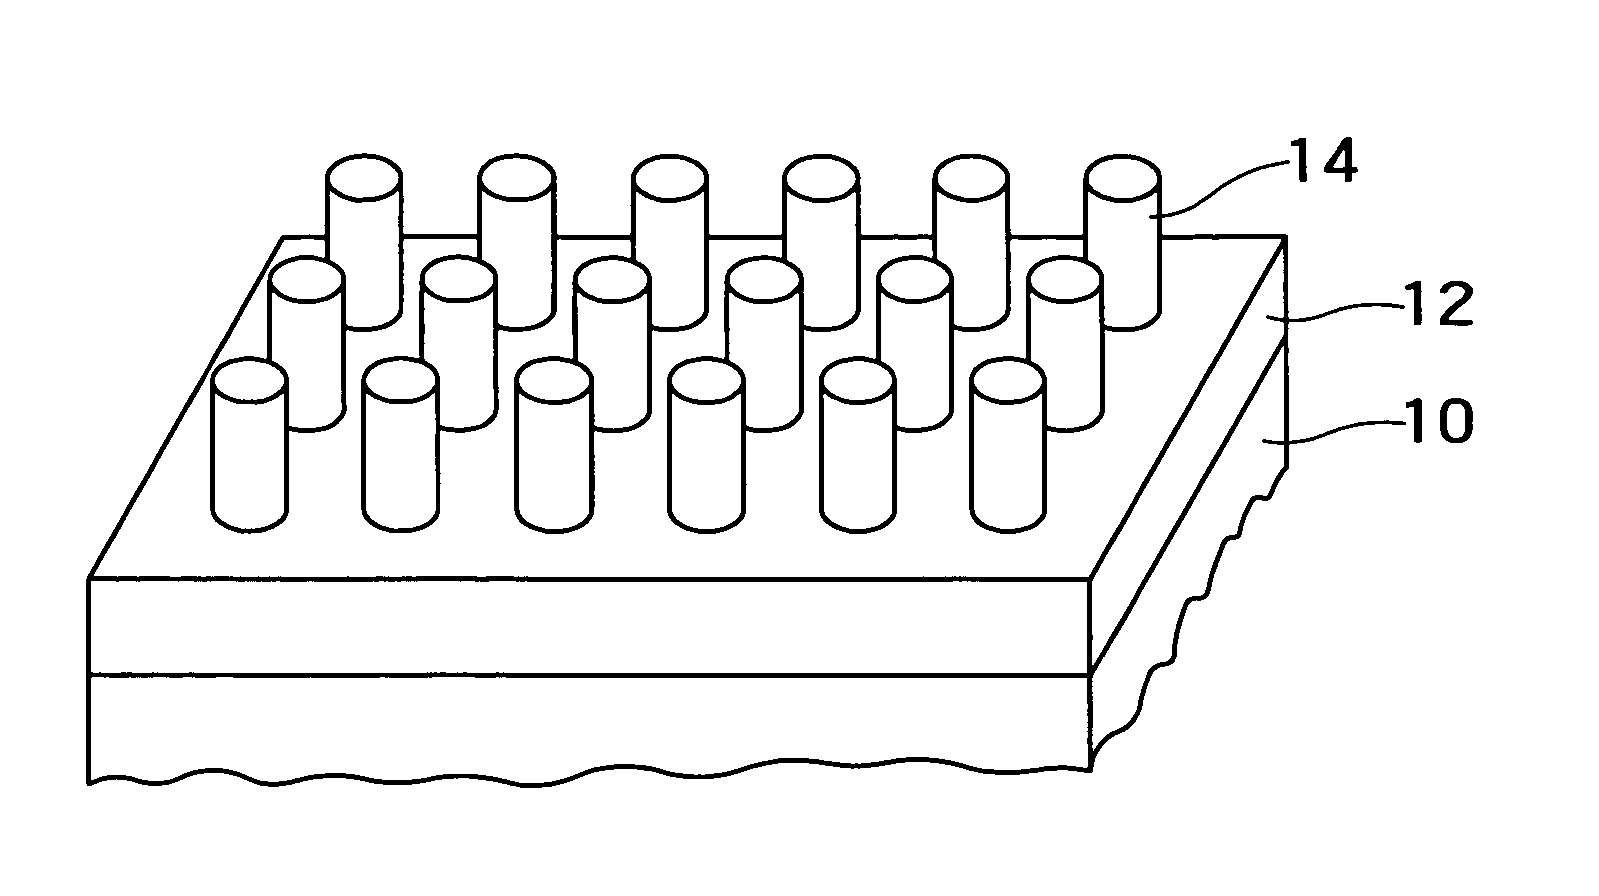 Electrode manufacturing method